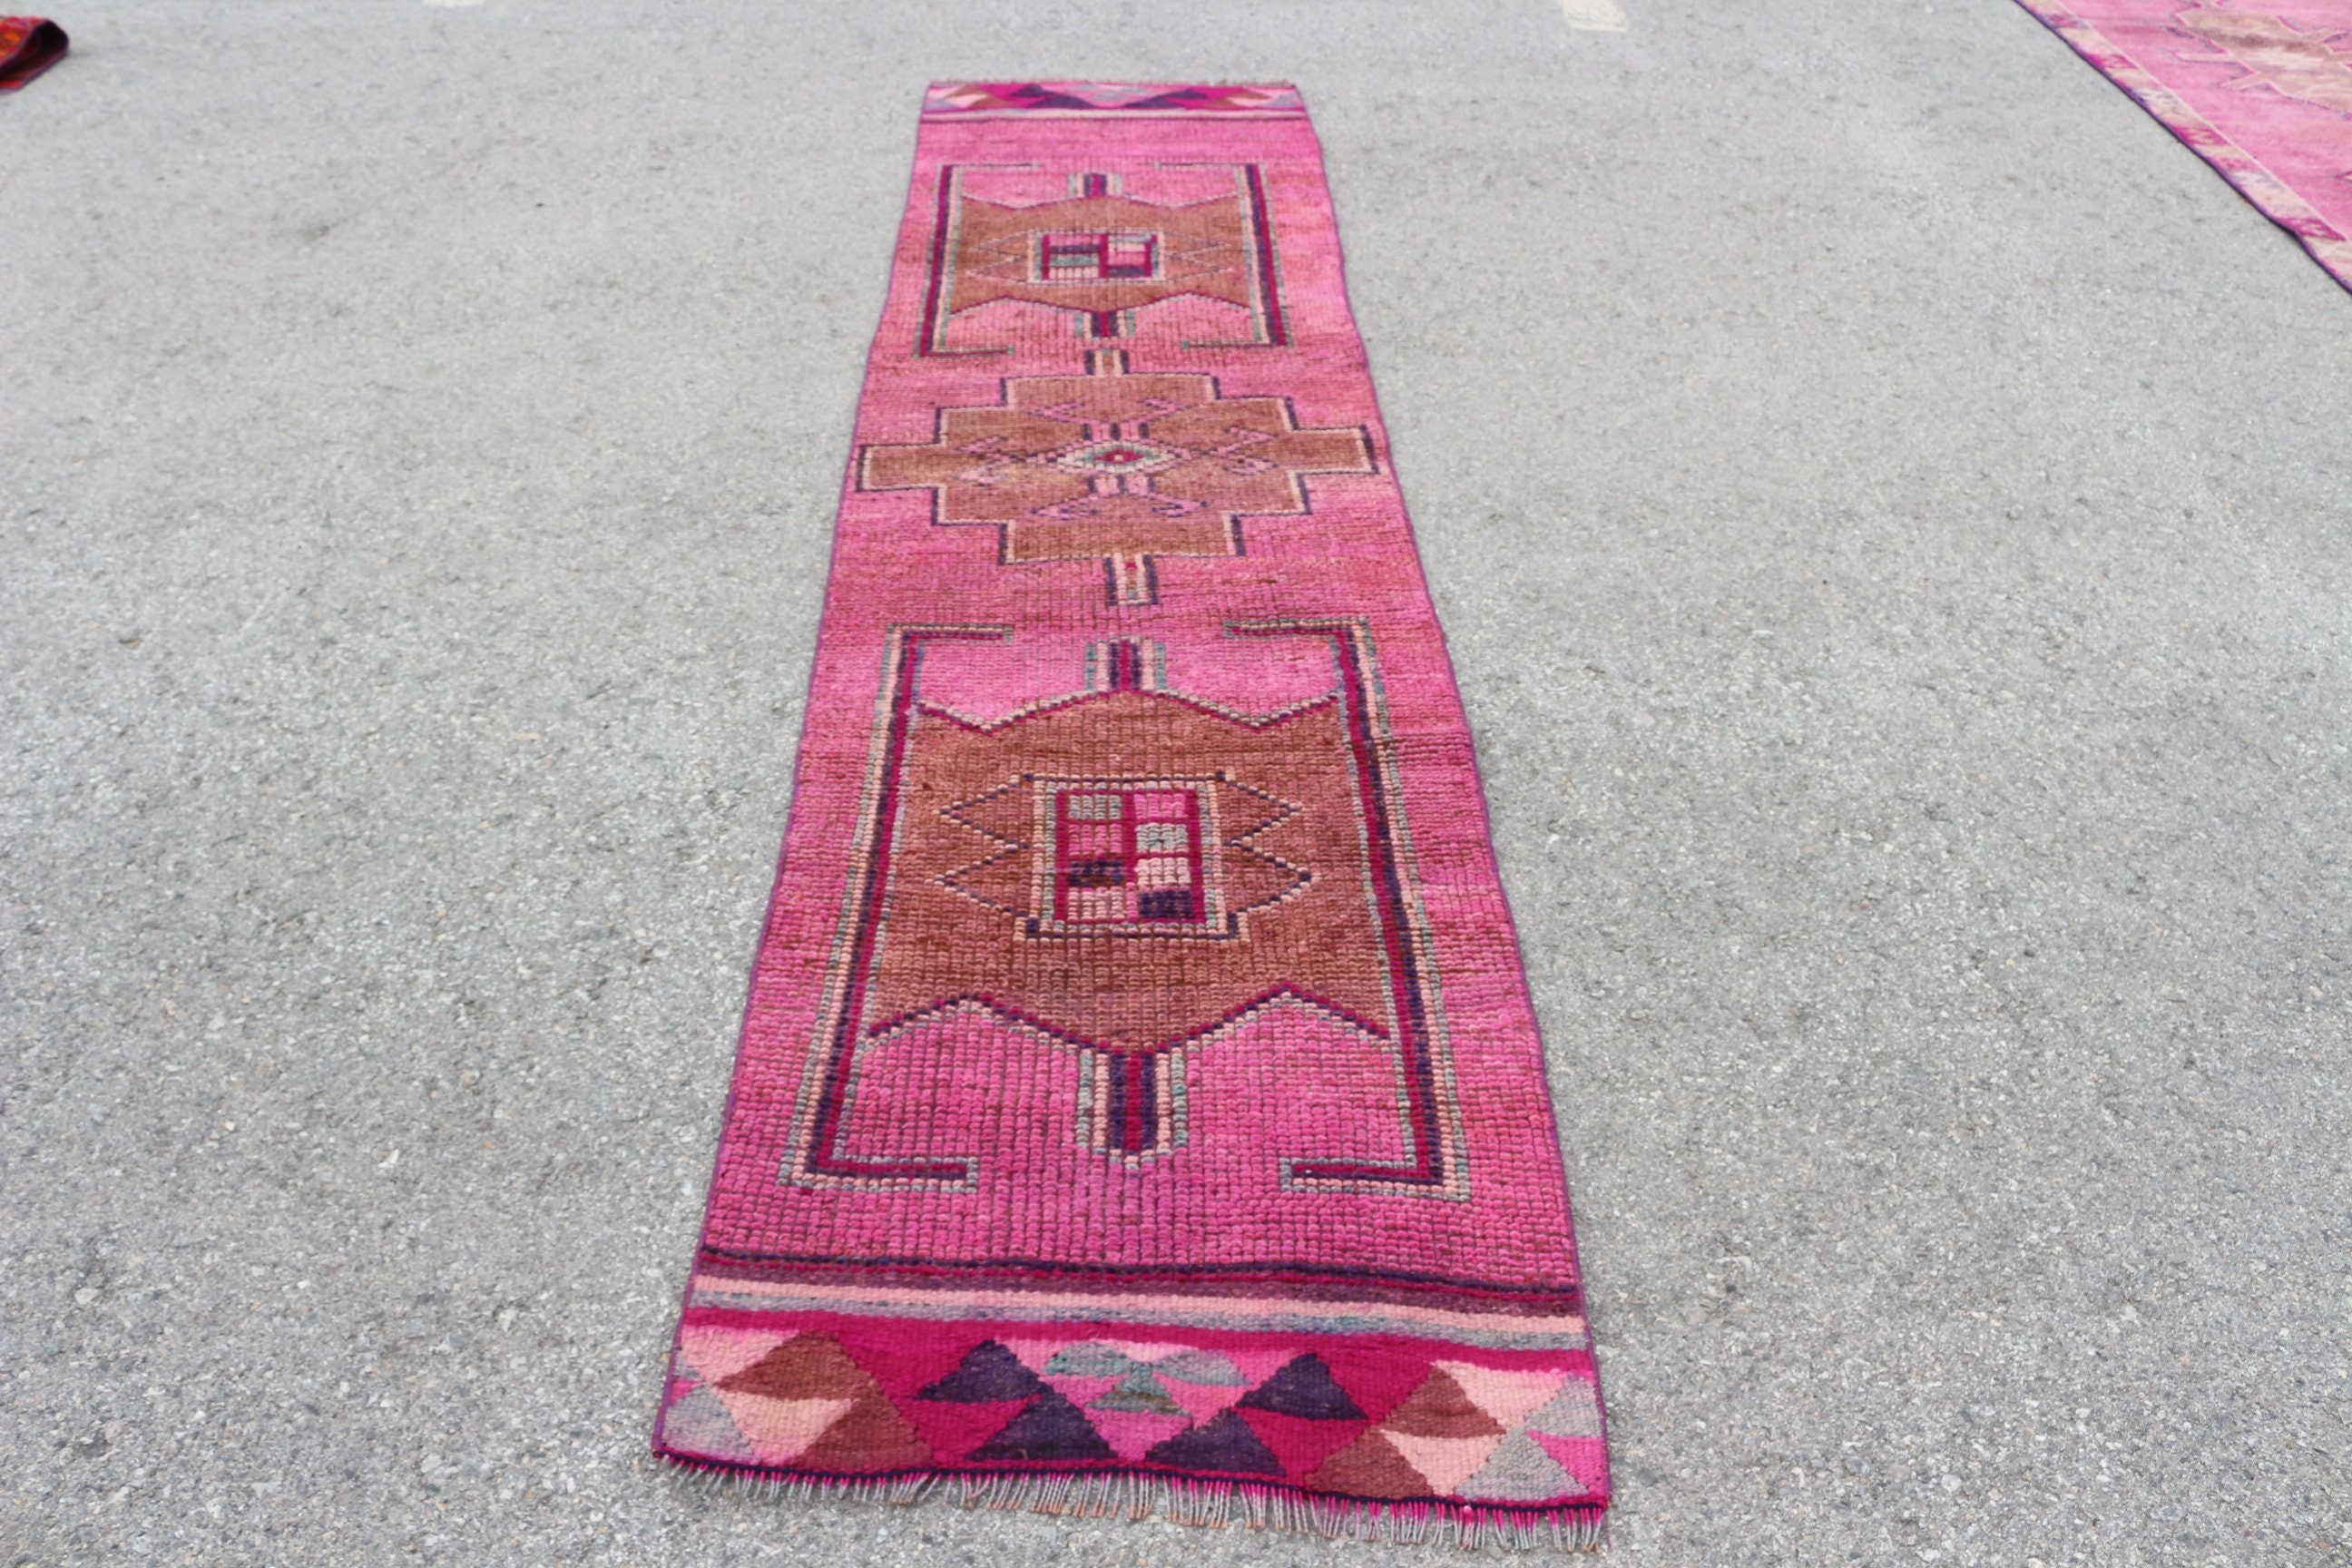 Turkish Rug, Cool Rugs, Vintage Rugs, Floor Rug, Hallway Rugs, 2.4x10.1 ft Runner Rugs, Rugs for Hallway, Stair Rug, Pink Oushak Rugs